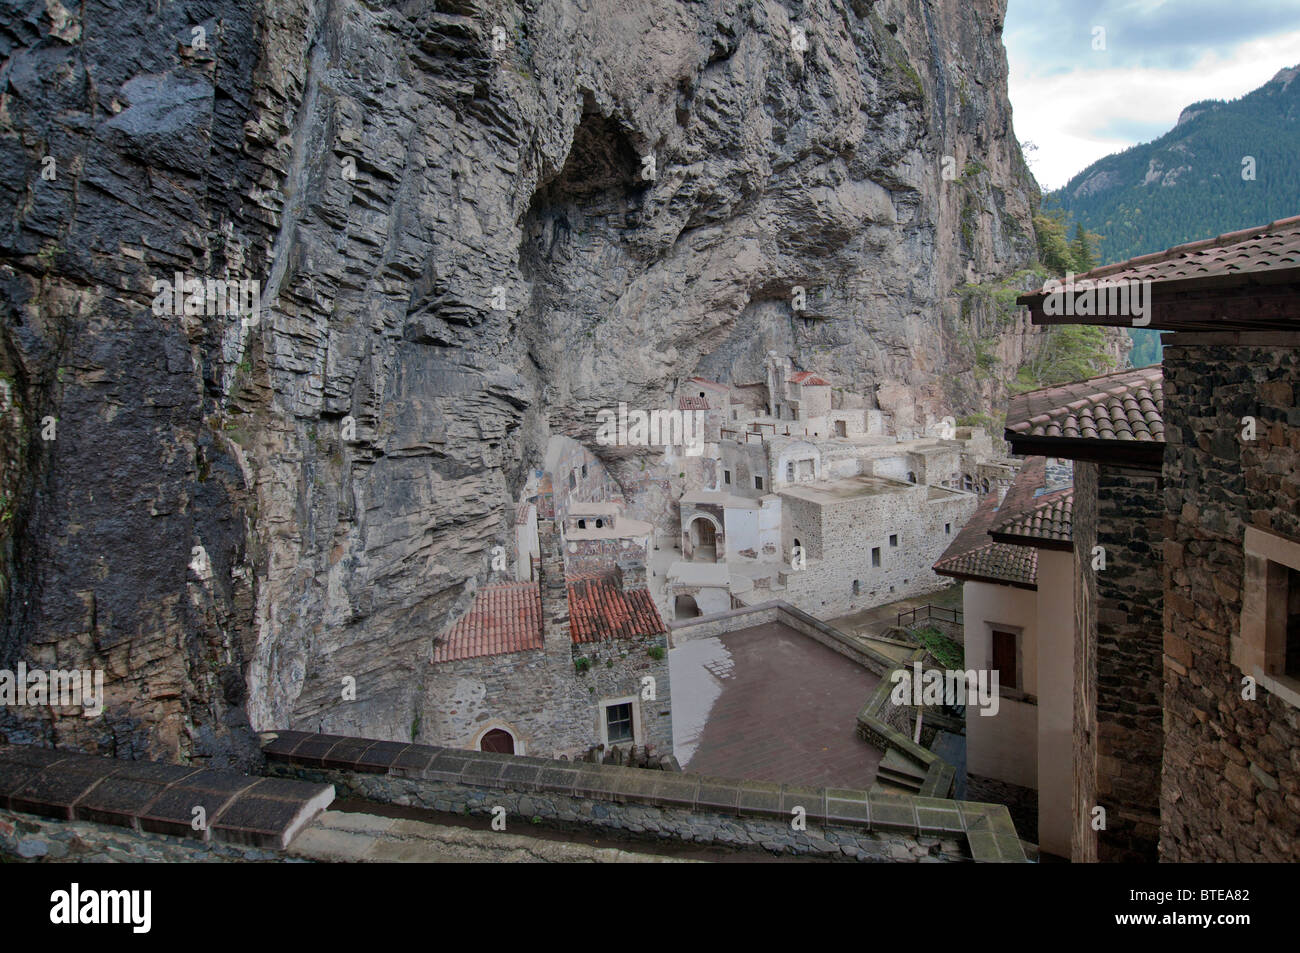 Sumela Kloster oder Meryem Ana (Jungfrau Maria) in den Zigana Bergen, in der Nähe von Trabzon in der Schwarzmeerregion der Türkei. Stockfoto